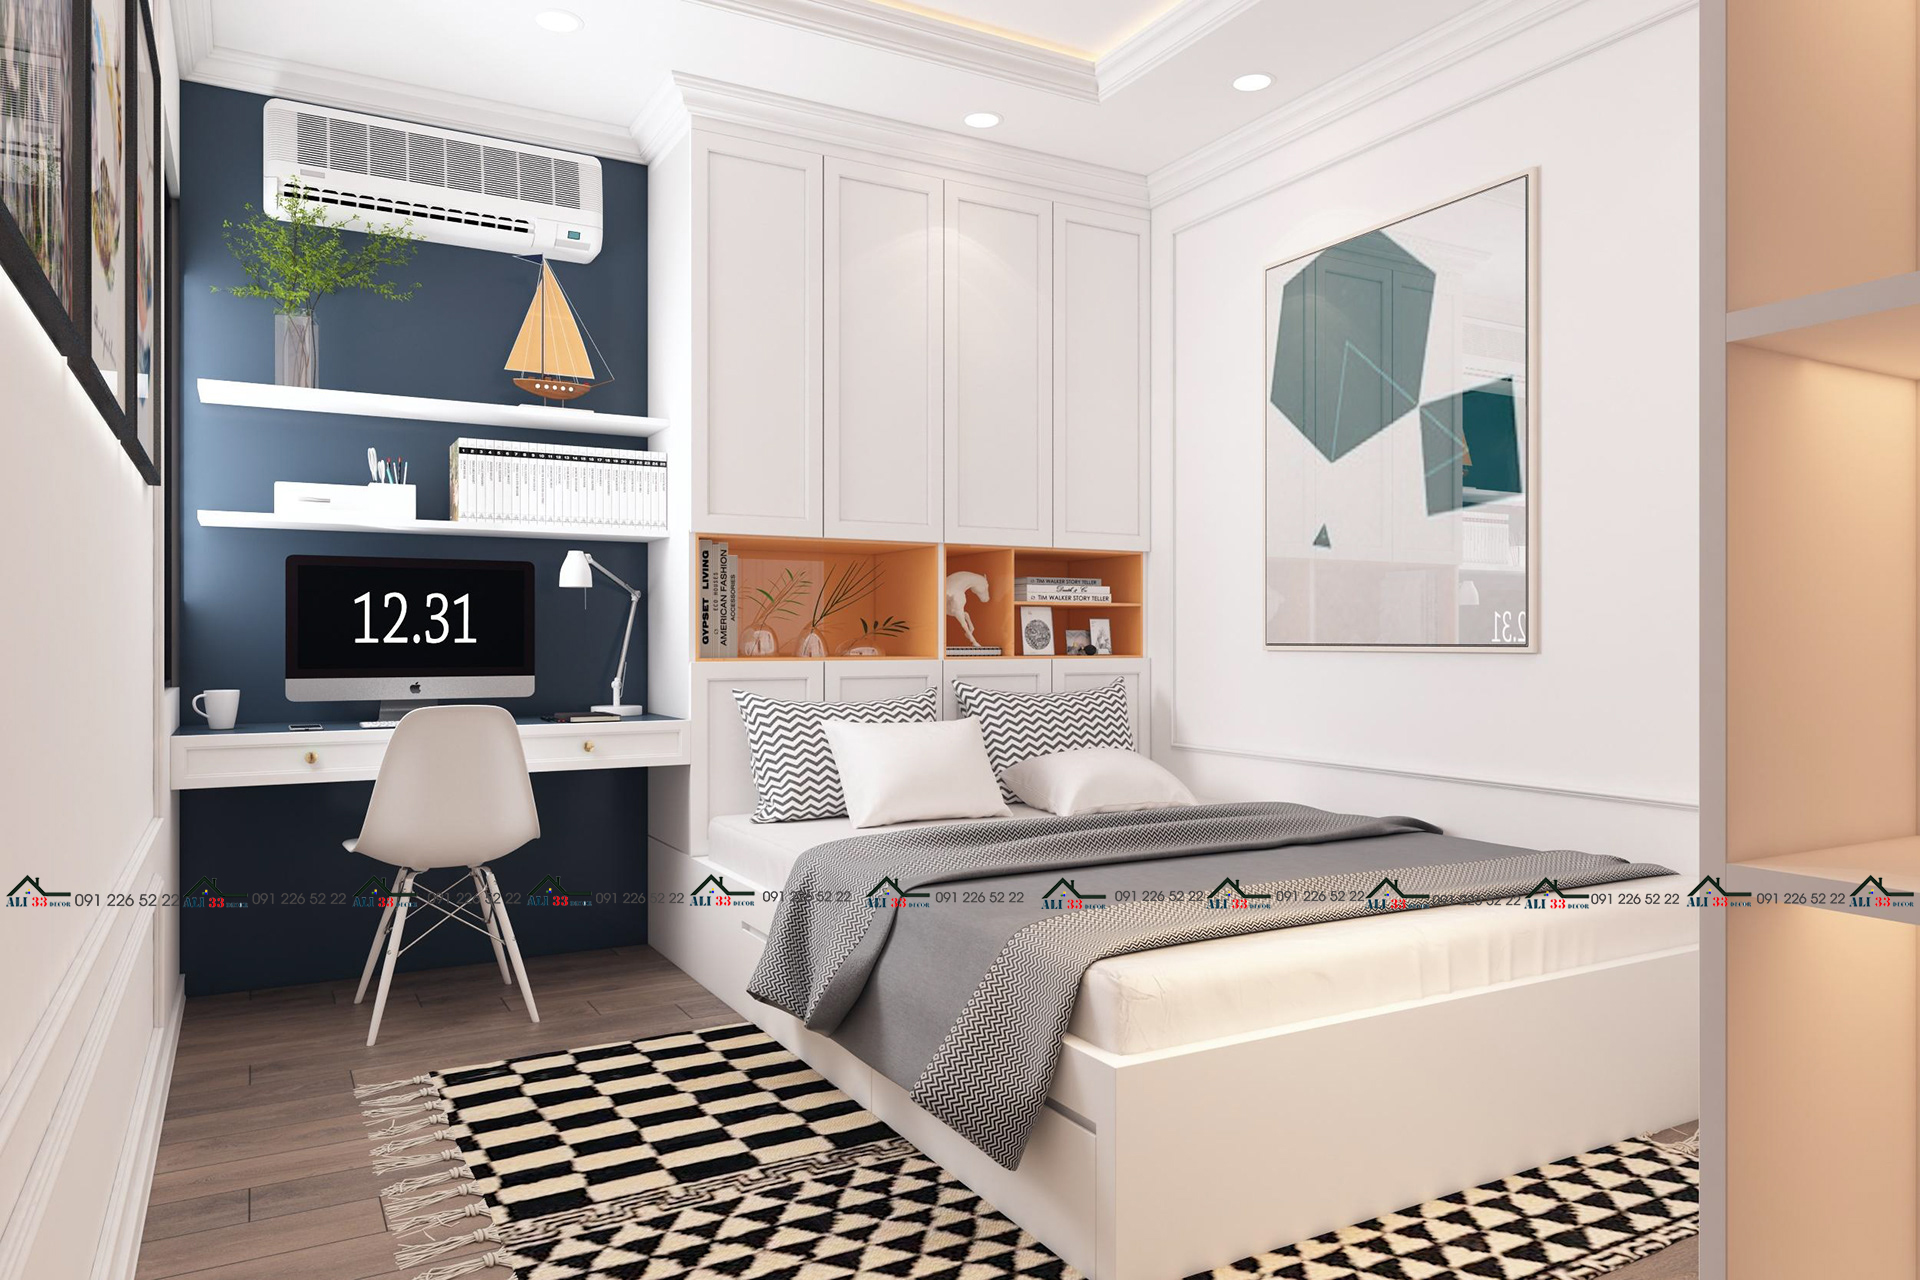 Thiết kế nội thất phòng ngủ hiện đại và công năng sử dụng